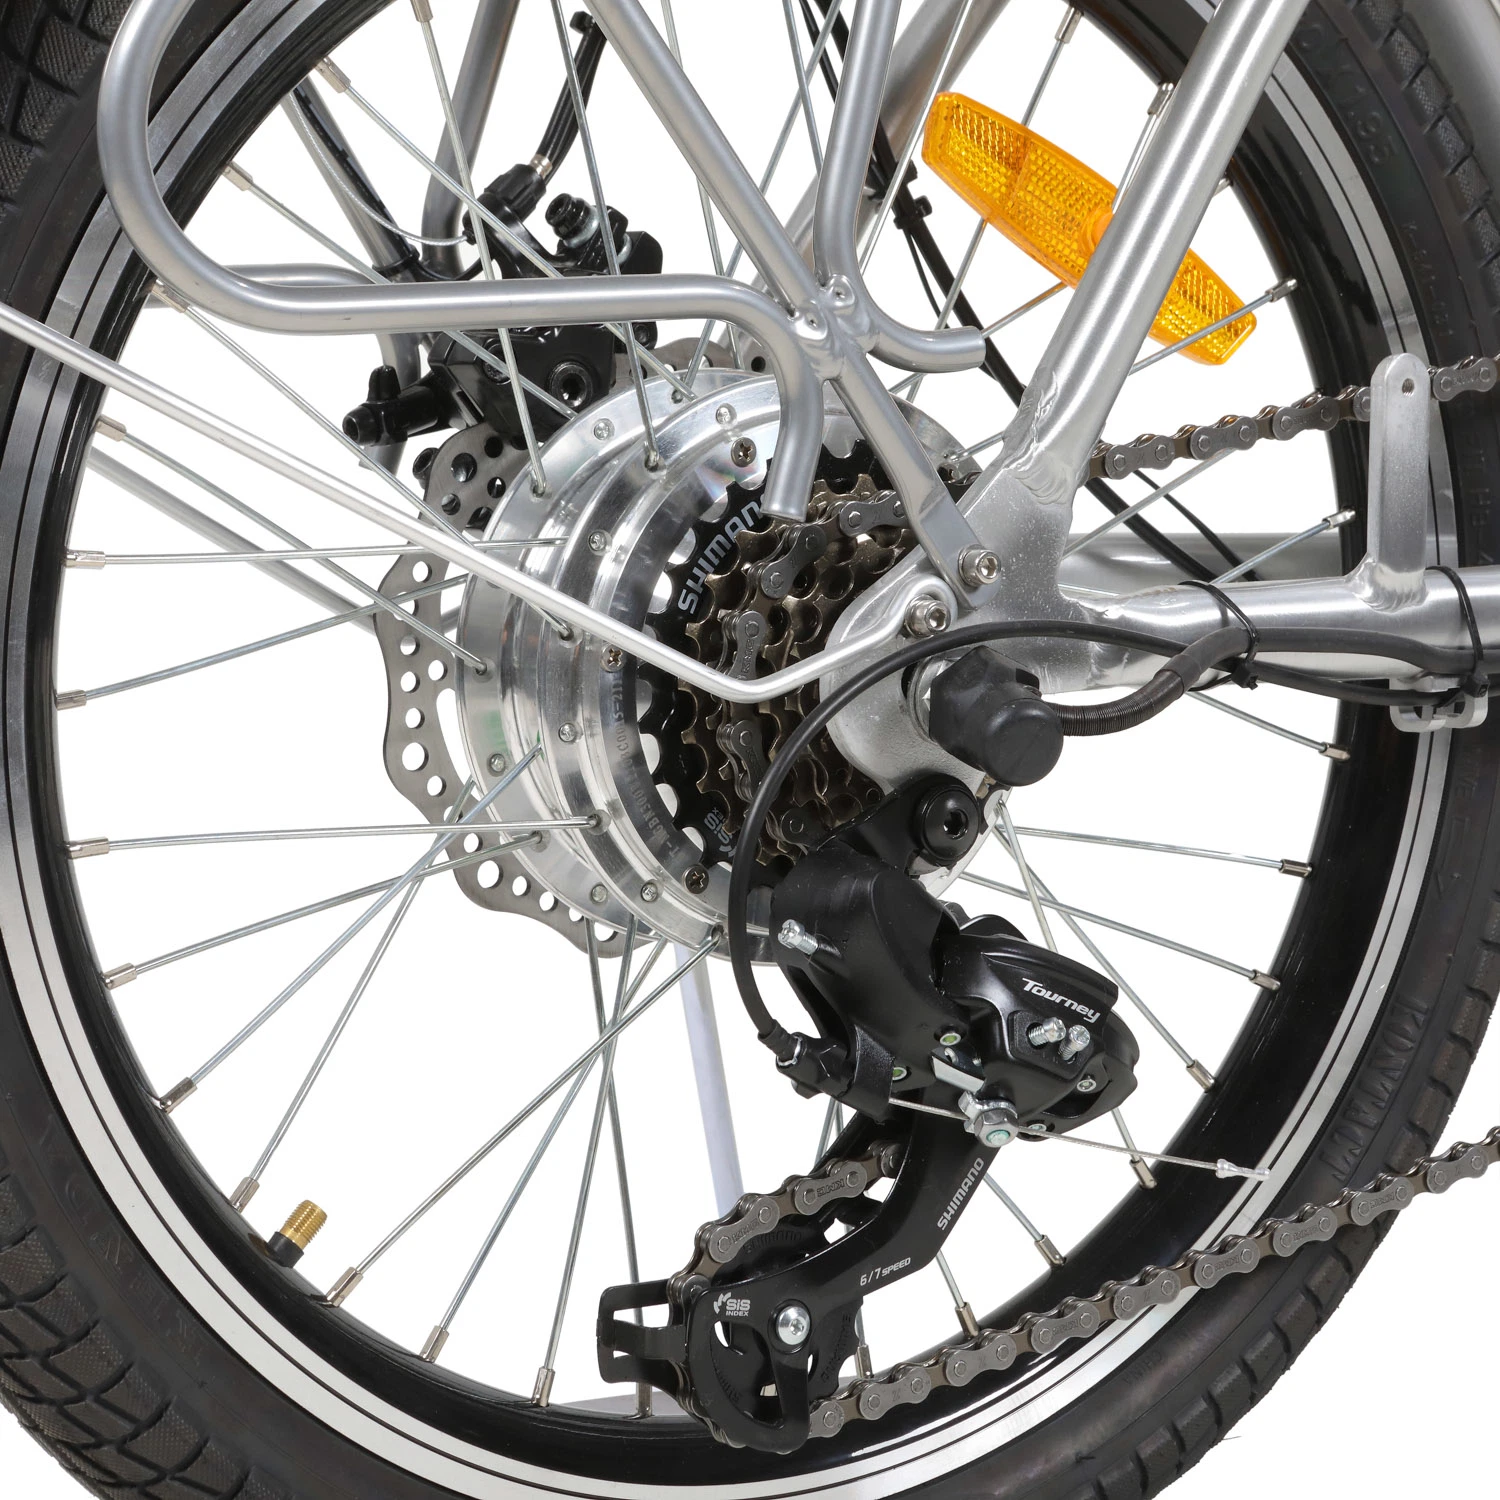 20 bicicleta eléctrica plegable 250W pulgadas eBike CE Certificación barato Bicicleta eléctrica plegable de bolsillo caliente